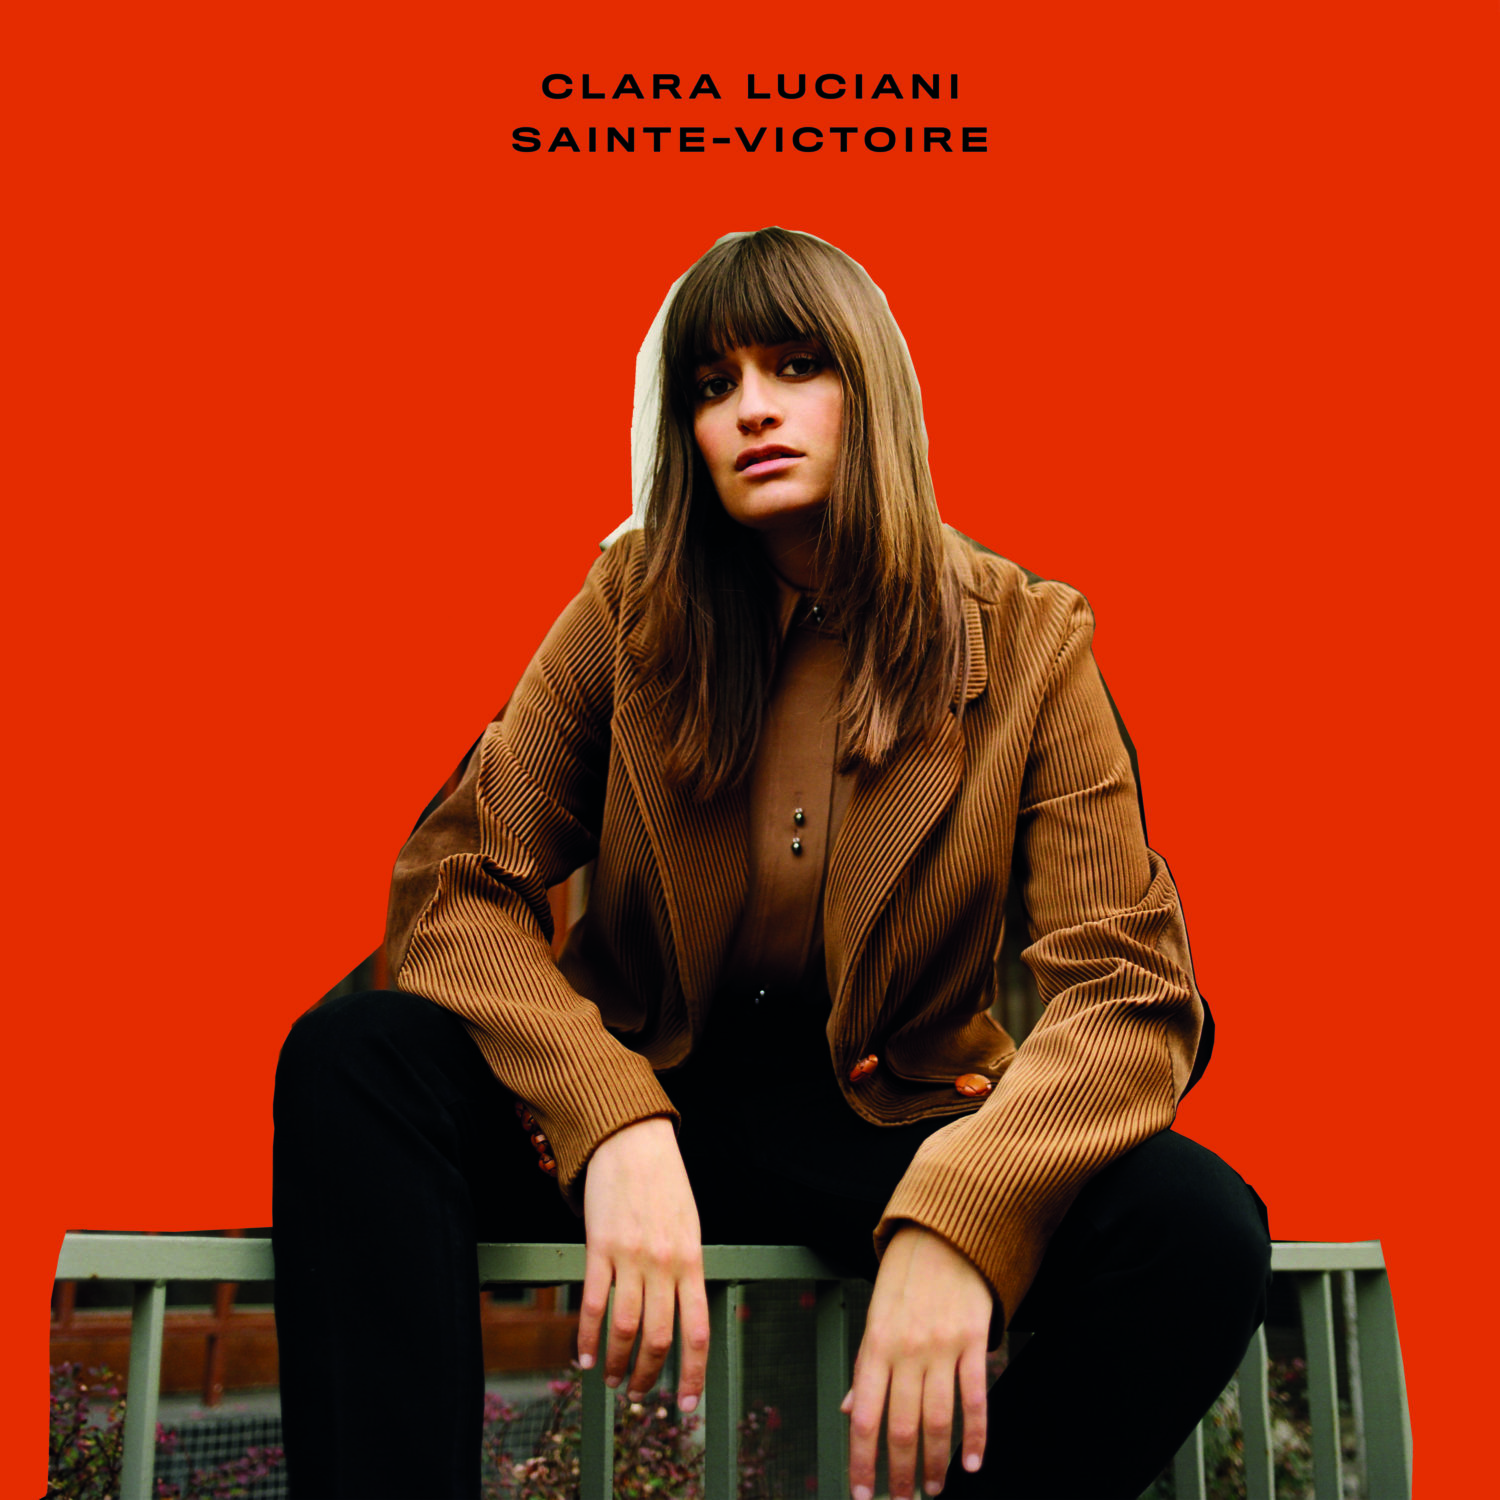 Clara Luciani image pochette cover album Sainte Victoire musique